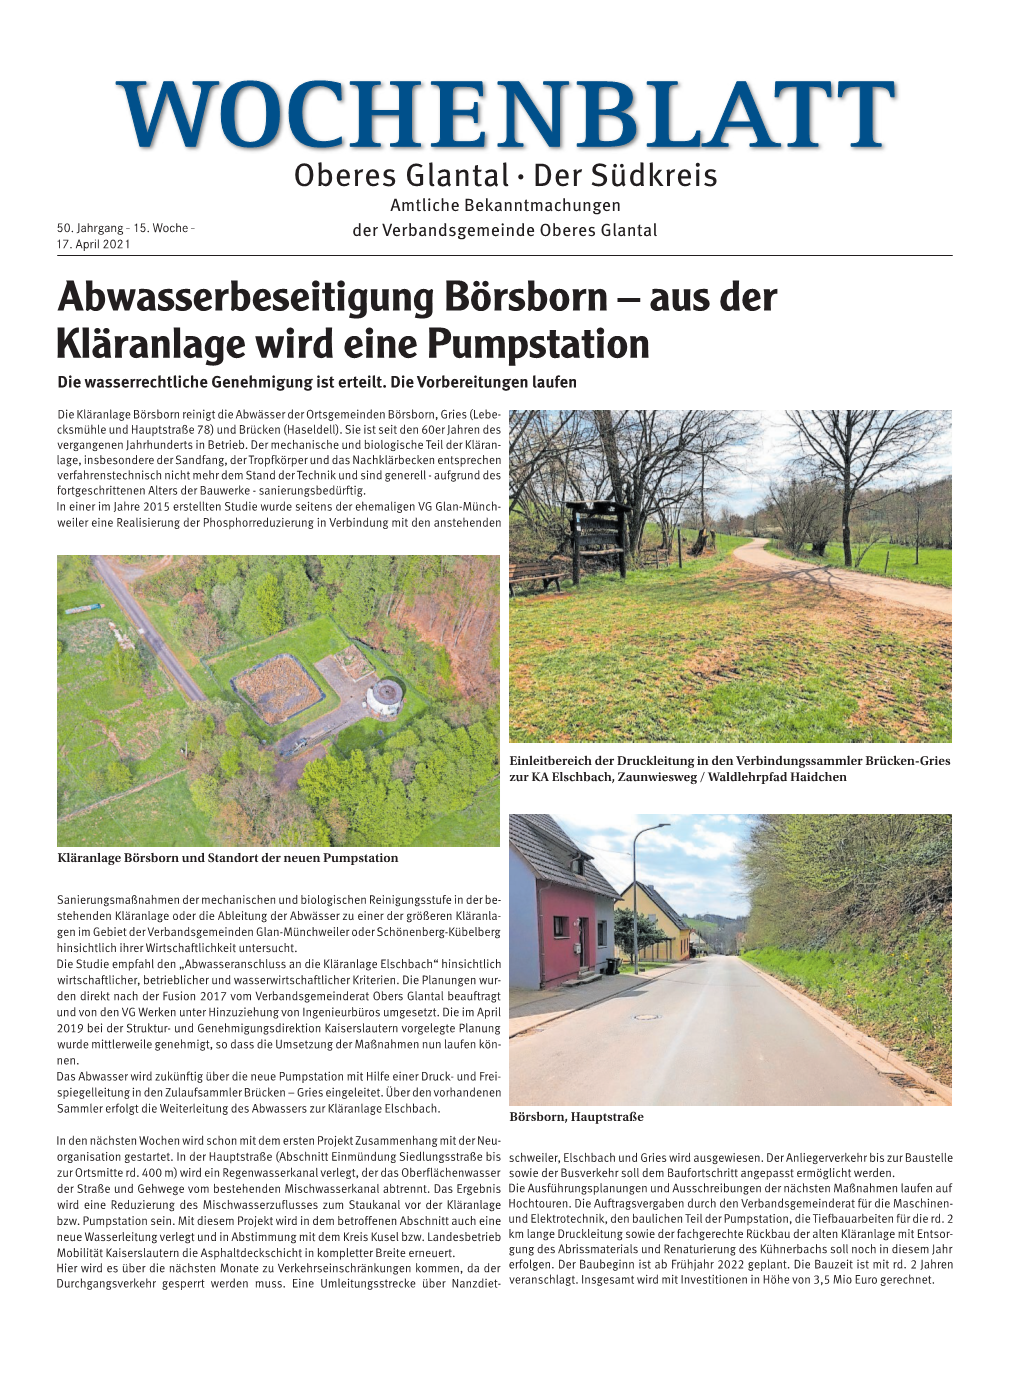 Abwasserbeseitigung Börsborn – Aus Der Kläranlage Wird Eine Pumpstation Die Wasserrechtliche Genehmigung Ist Erteilt